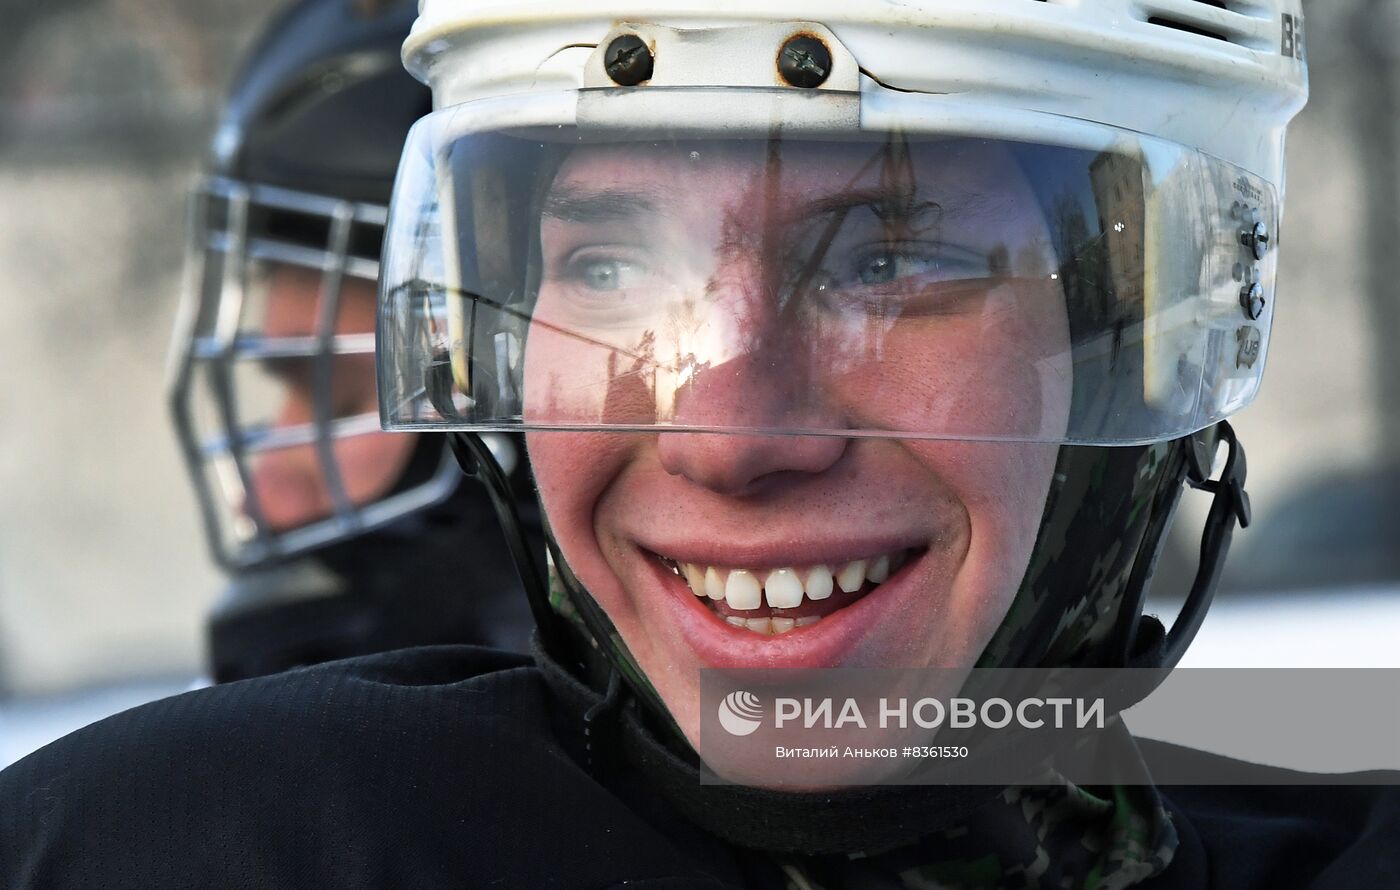 Турнир по дворовому хоккею во Владивостоке 